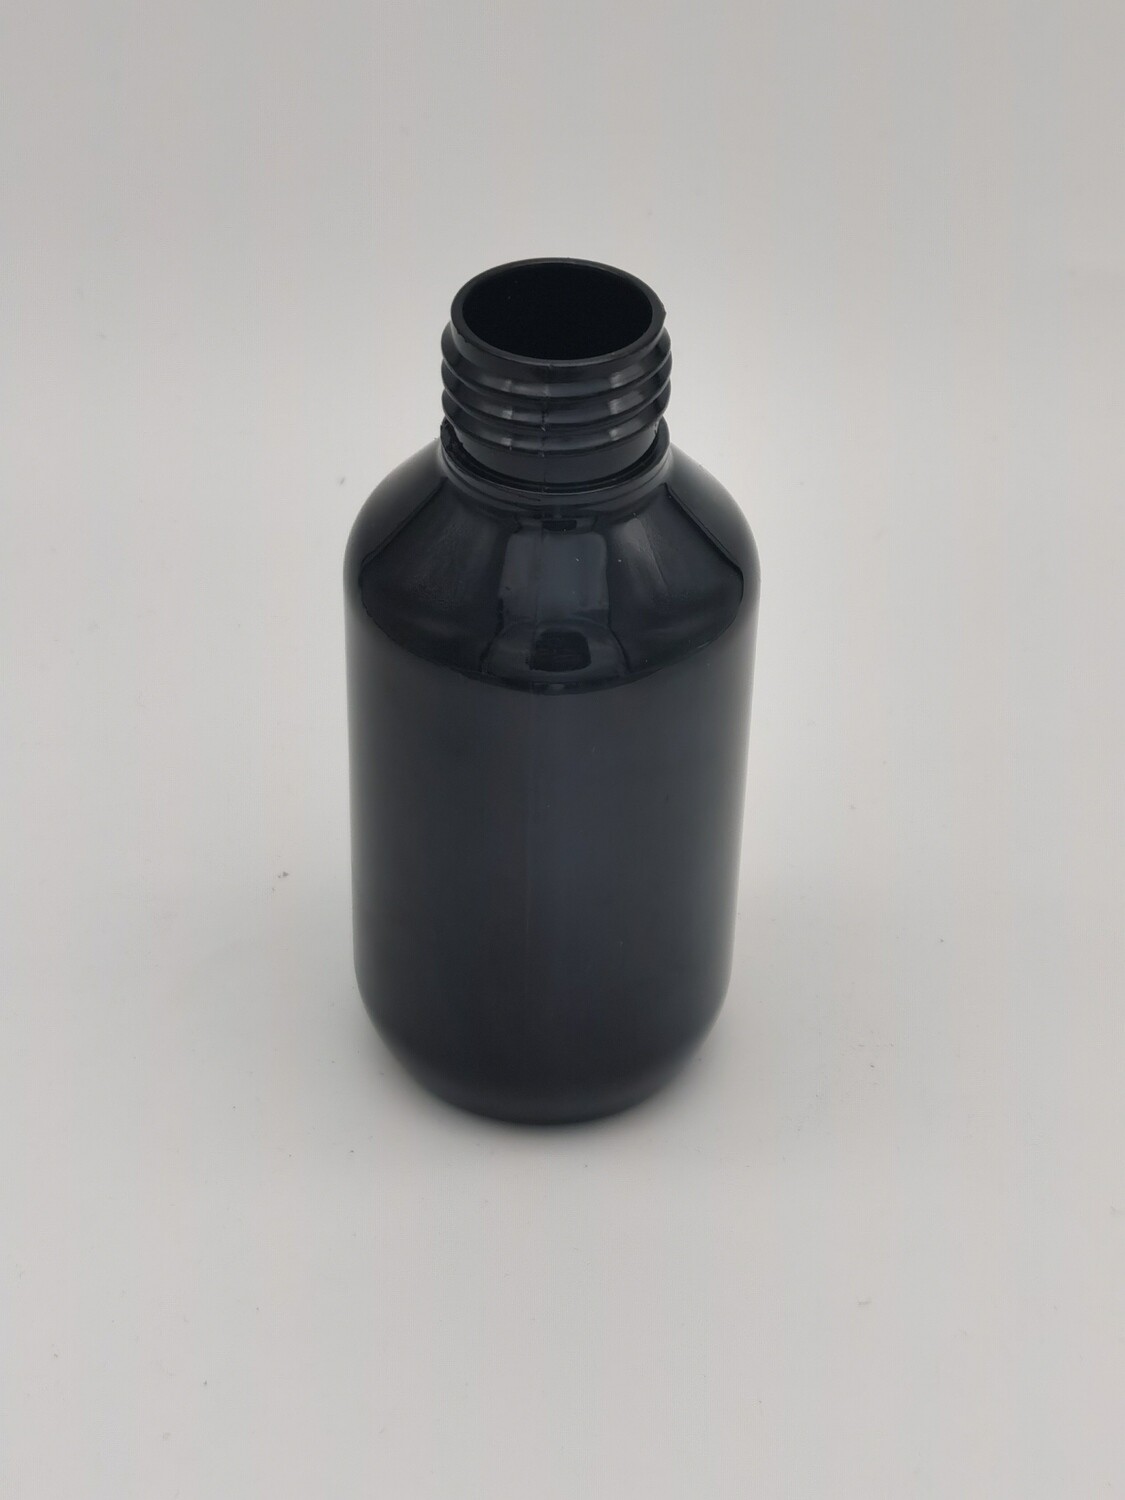 100mL BLACK Veral PET(Plastic) Bottle - 24mm/410 Neck - Single Buy